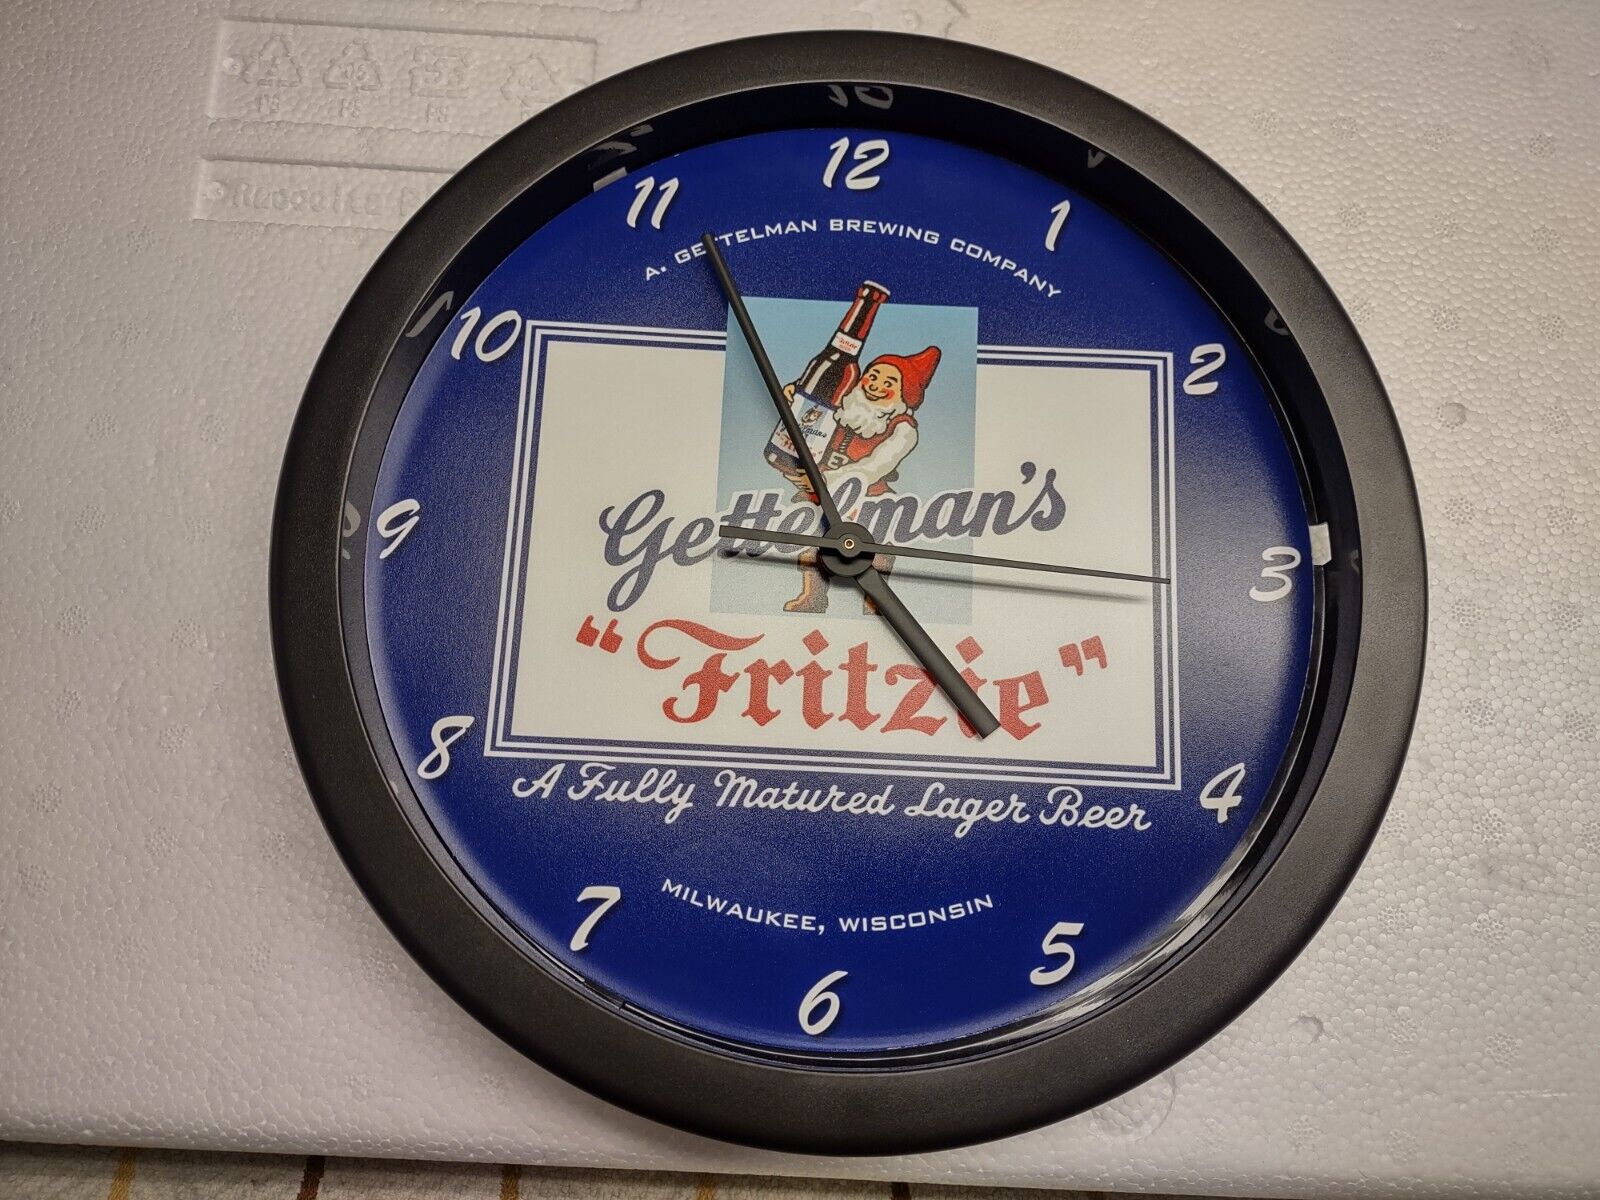 Gettelman's Beer Wall Clock - Fritzie